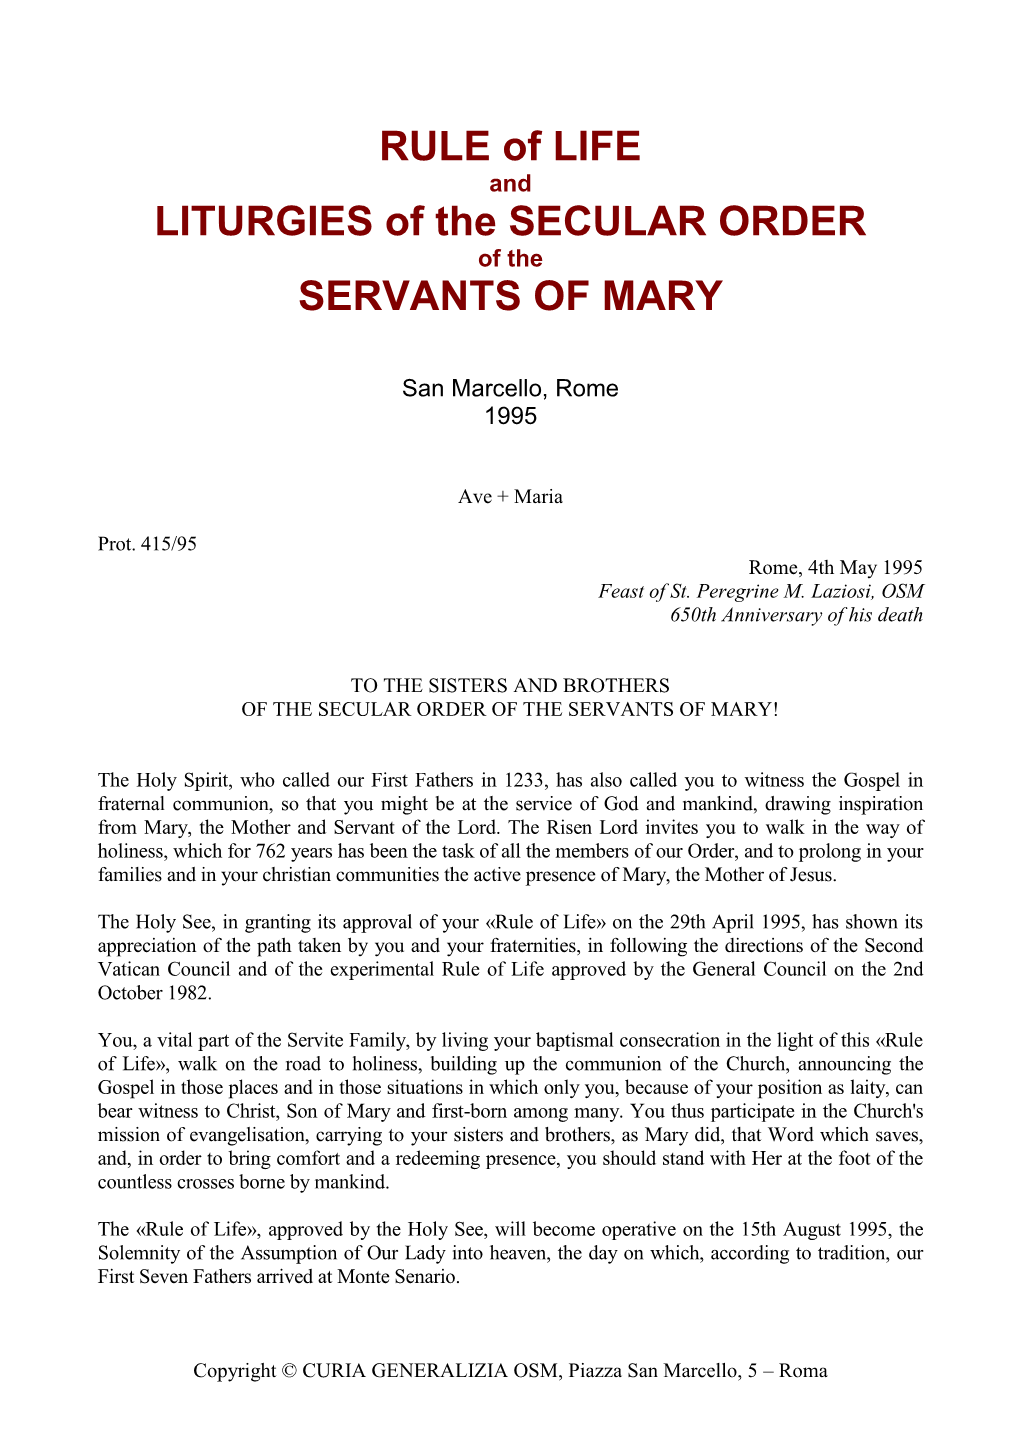 RULE of LIFE LITURGIES of the SECULAR ORDER SERVANTS OF